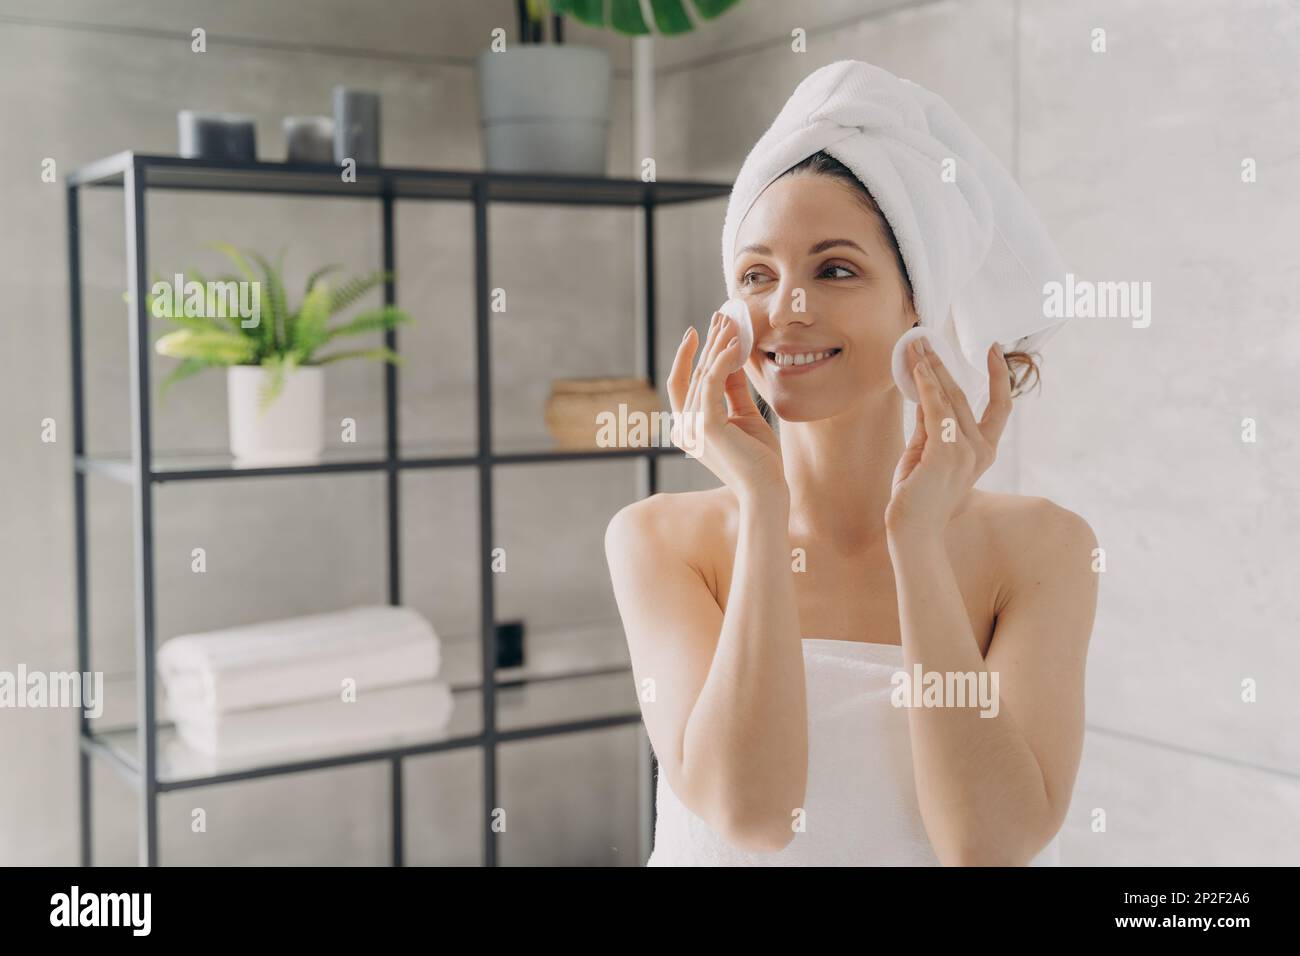 Hübsches lateinamerikanisches Mädchen, das die Gesichtshaut mit Wattepads reinigt. Eine lächelnde Frau, die in Handtücher eingewickelt ist, wischte das Make-up nach der Dusche im Badezimmer ab. Hautpflege da Stockfoto